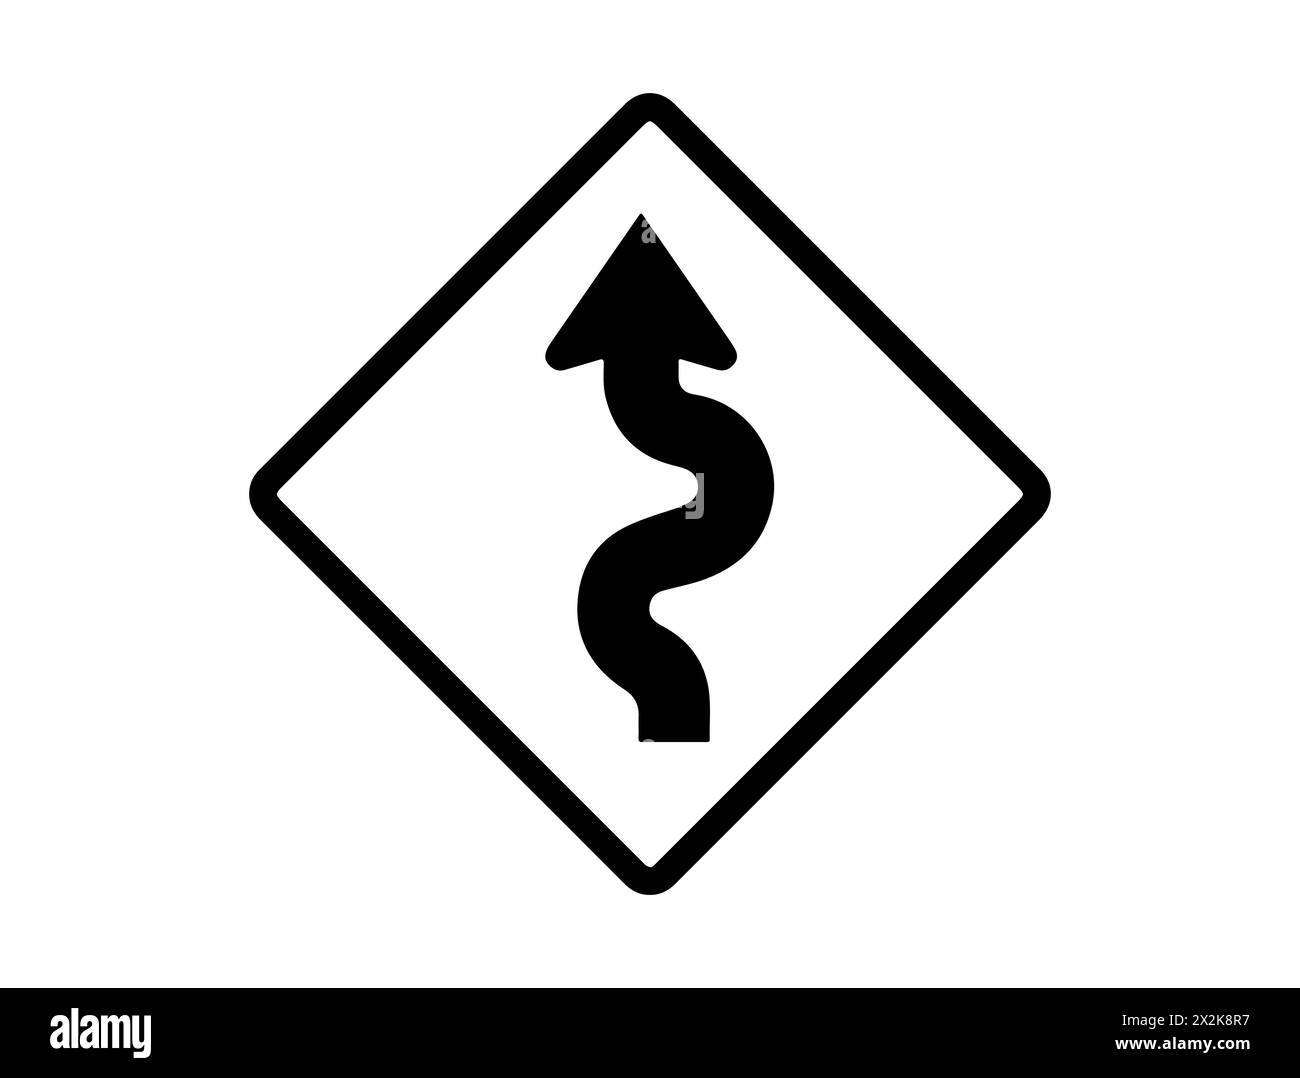 Art vectoriel de silhouette de signe de route courbe Illustration de Vecteur